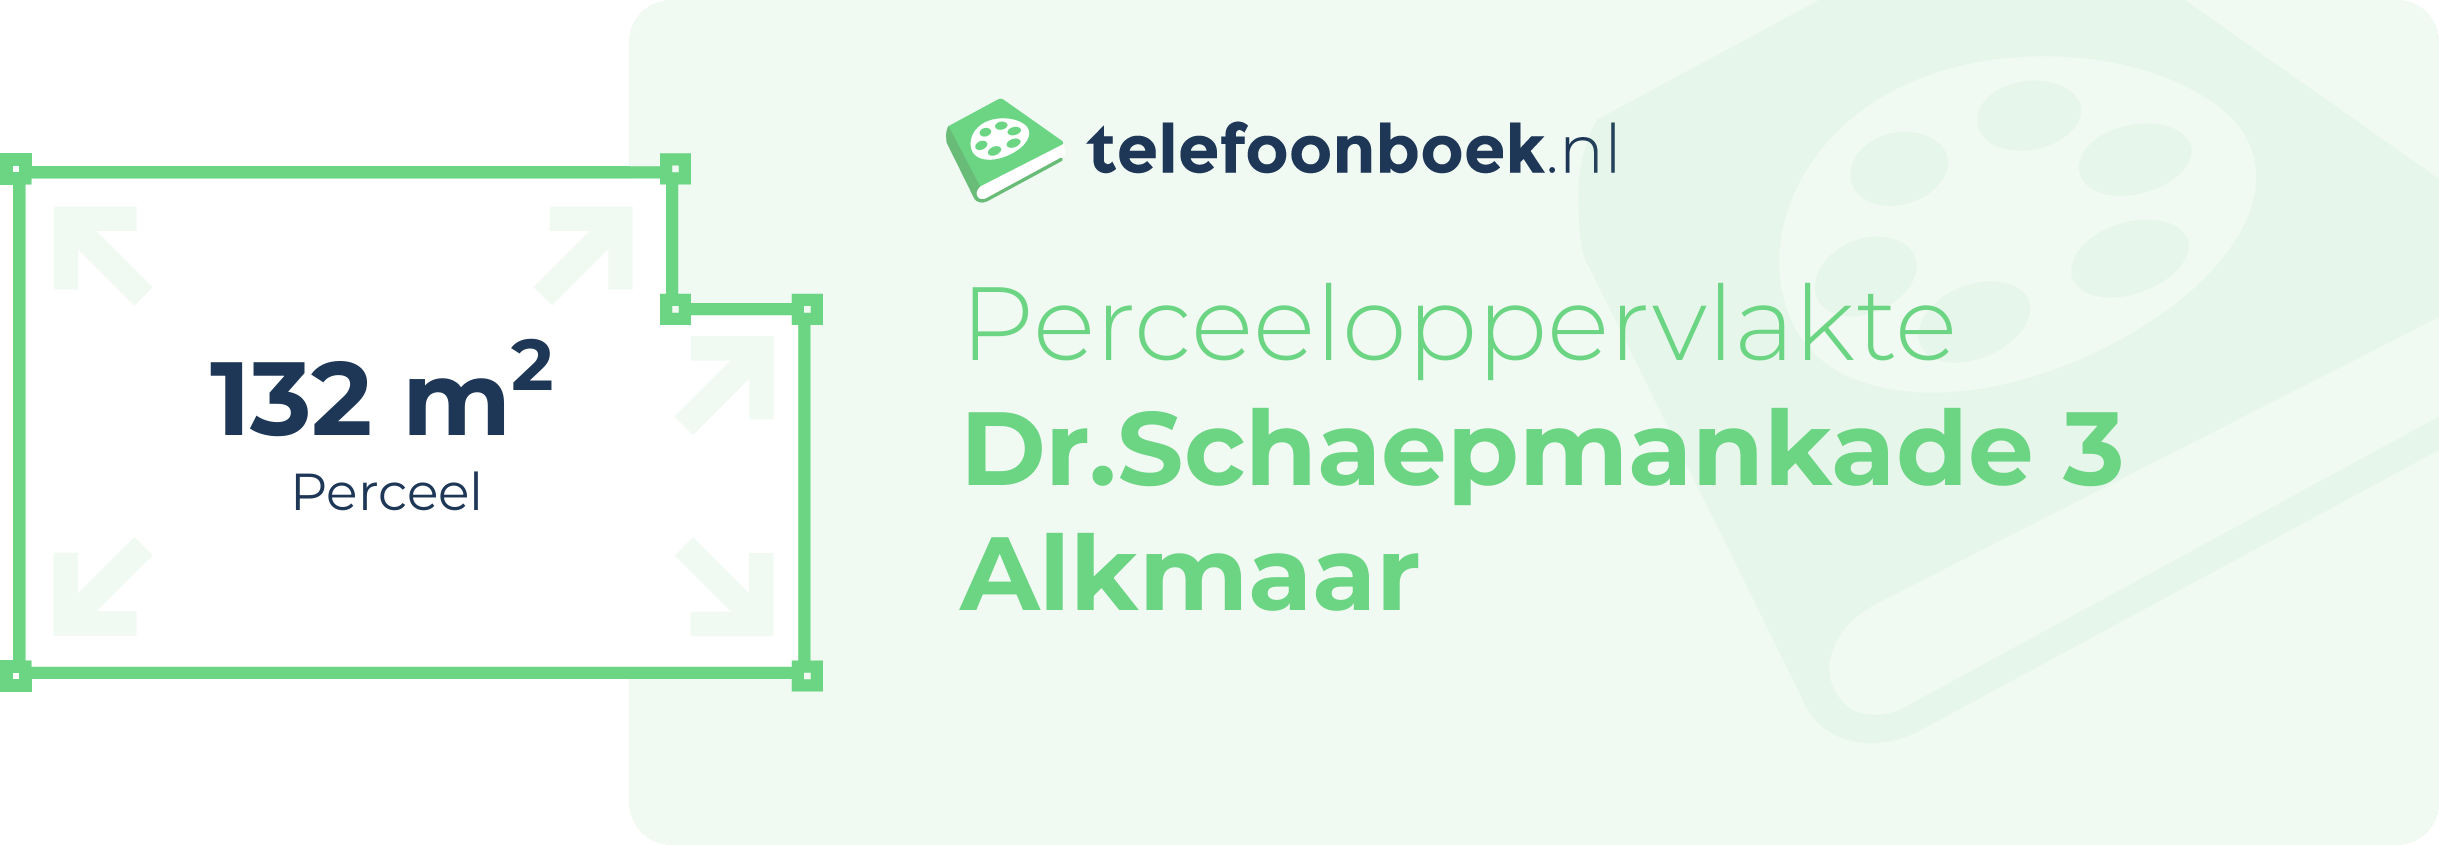 Perceeloppervlakte Dr.Schaepmankade 3 Alkmaar